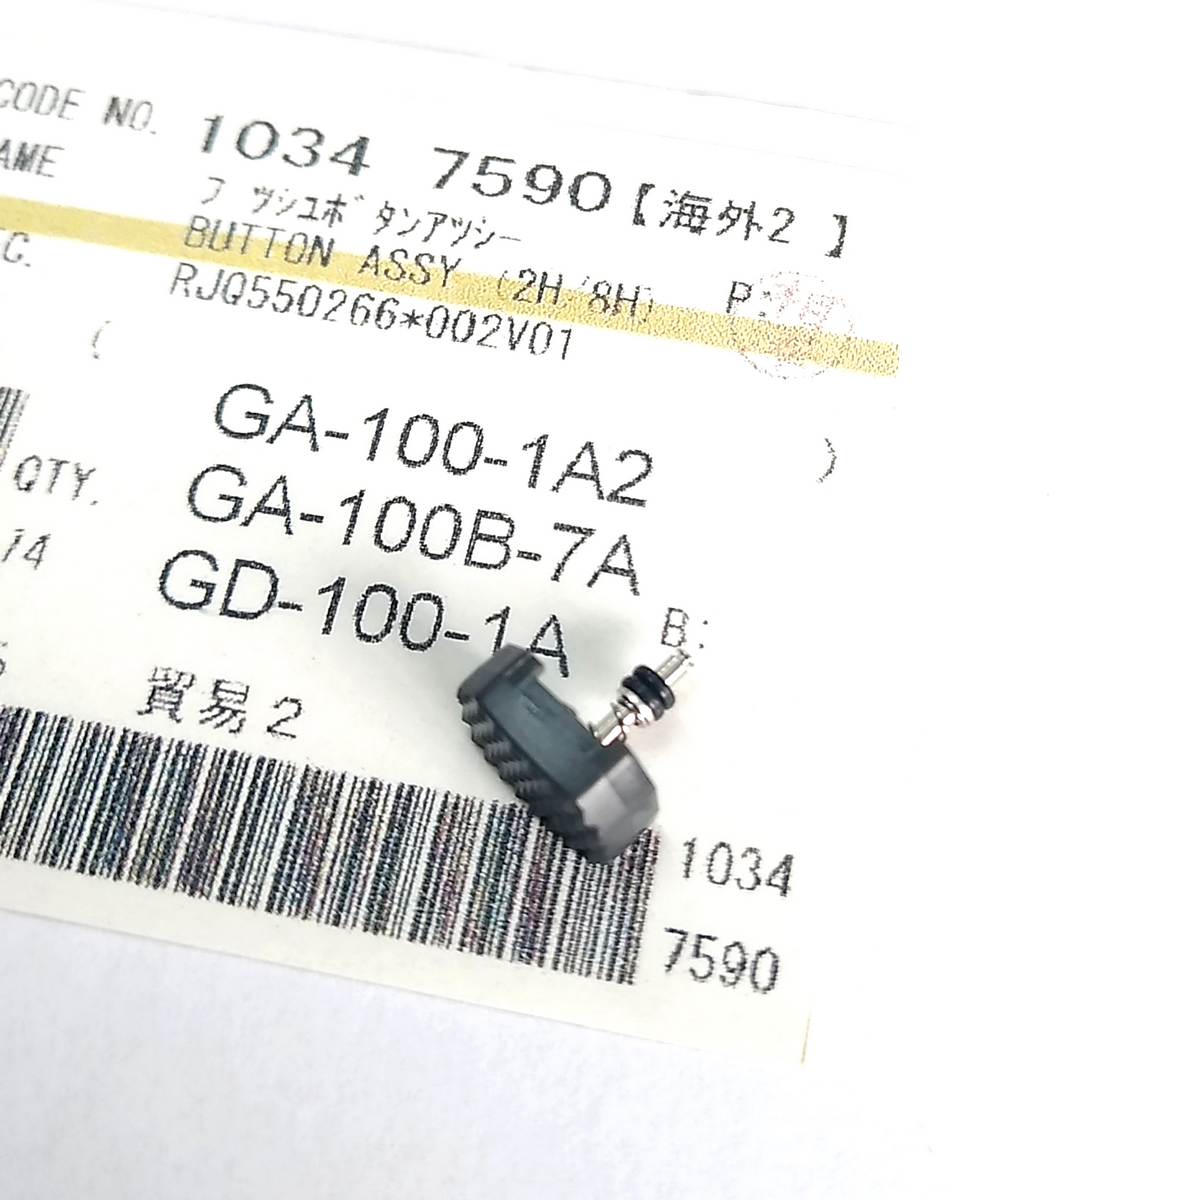 Botão Lateral Casio G-shock GA-100B-7A GD-100-1A GA-100-1A2  (2H) E (8H) - E-Presentes